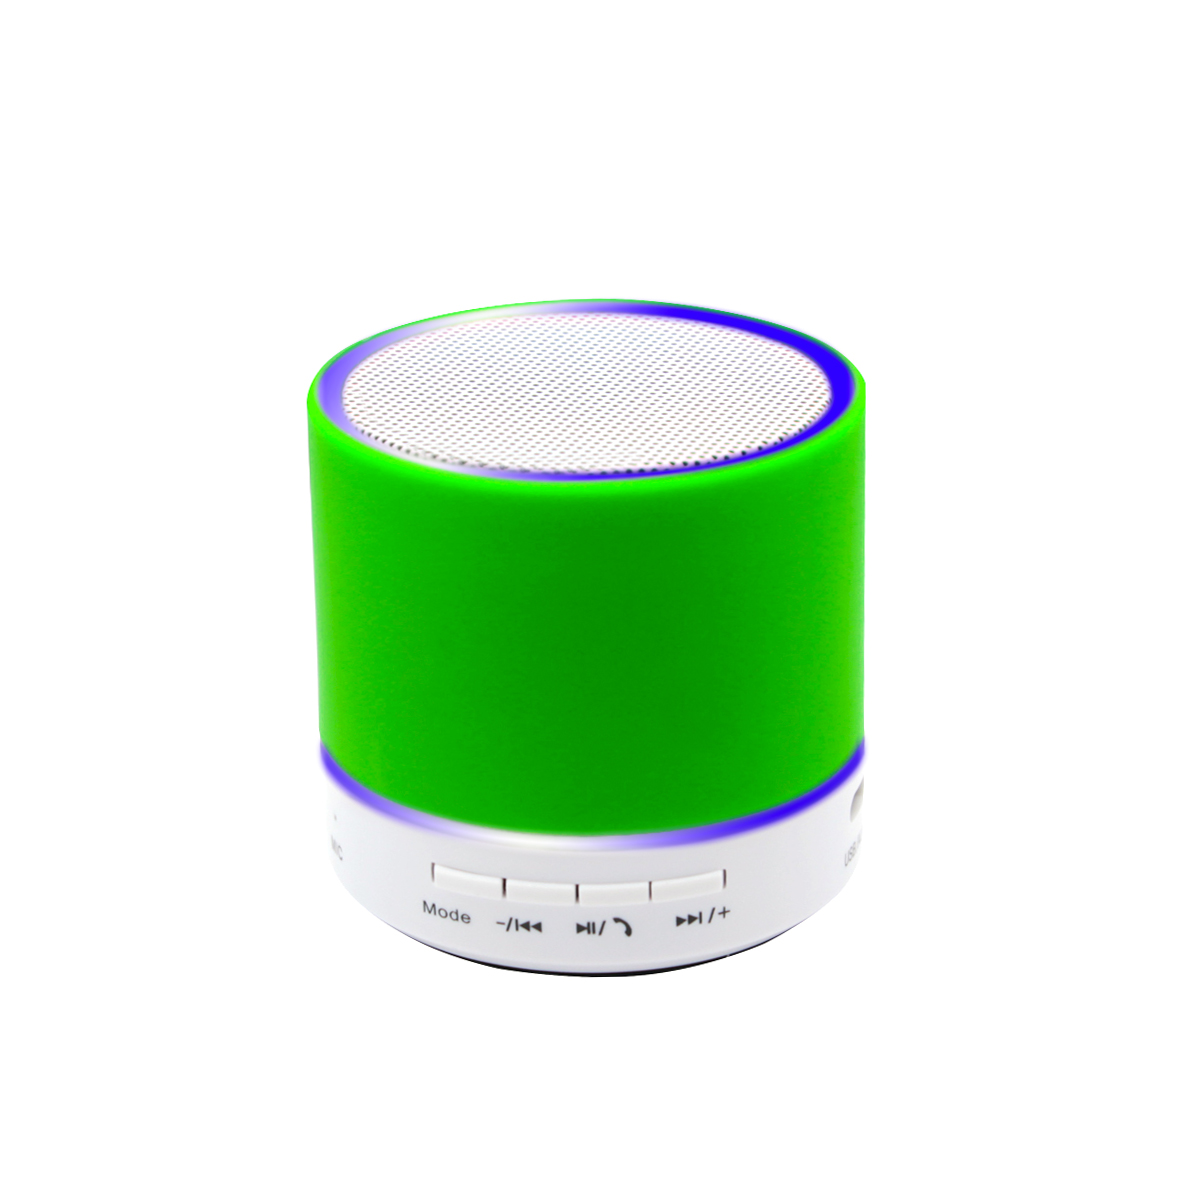 Беспроводная Bluetooth колонка Attilan (BLTS01), зеленая (Фото)